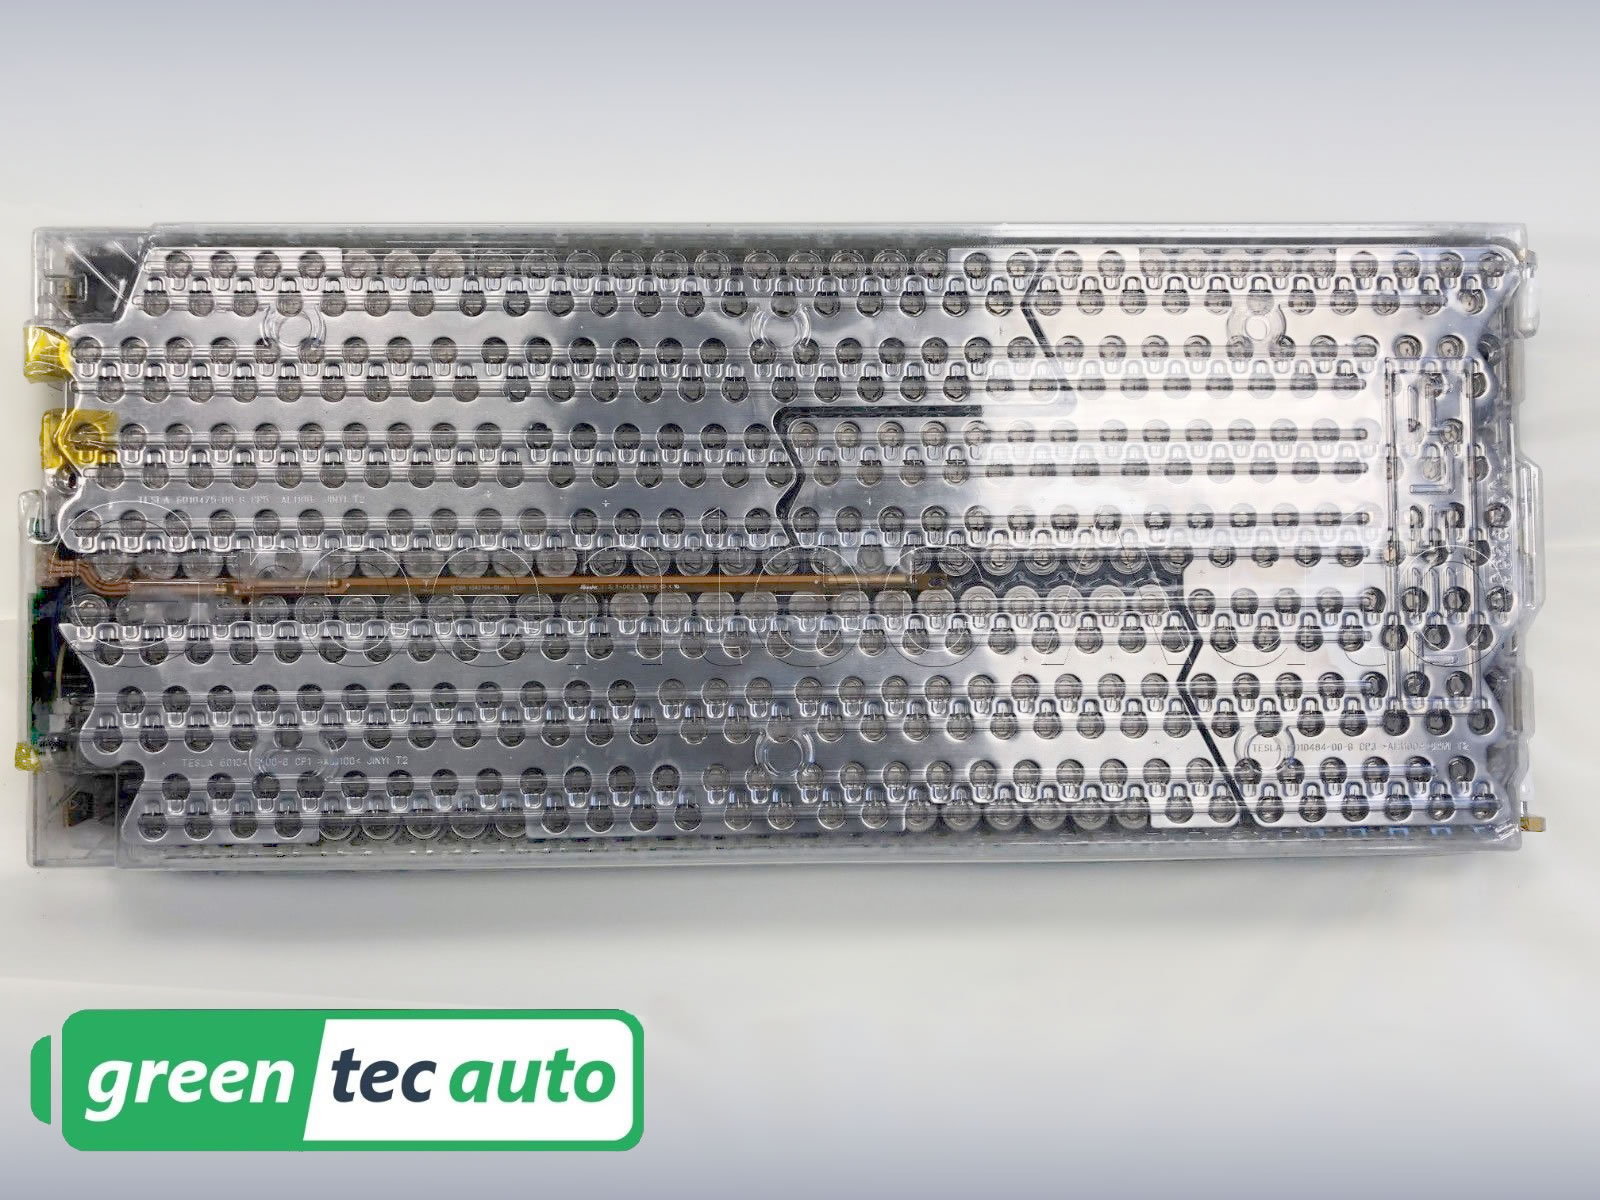 uitblinken Advertentie element Tesla Model S Battery Module 5.3kWh 24V 444 18650 cells | Greentec Auto